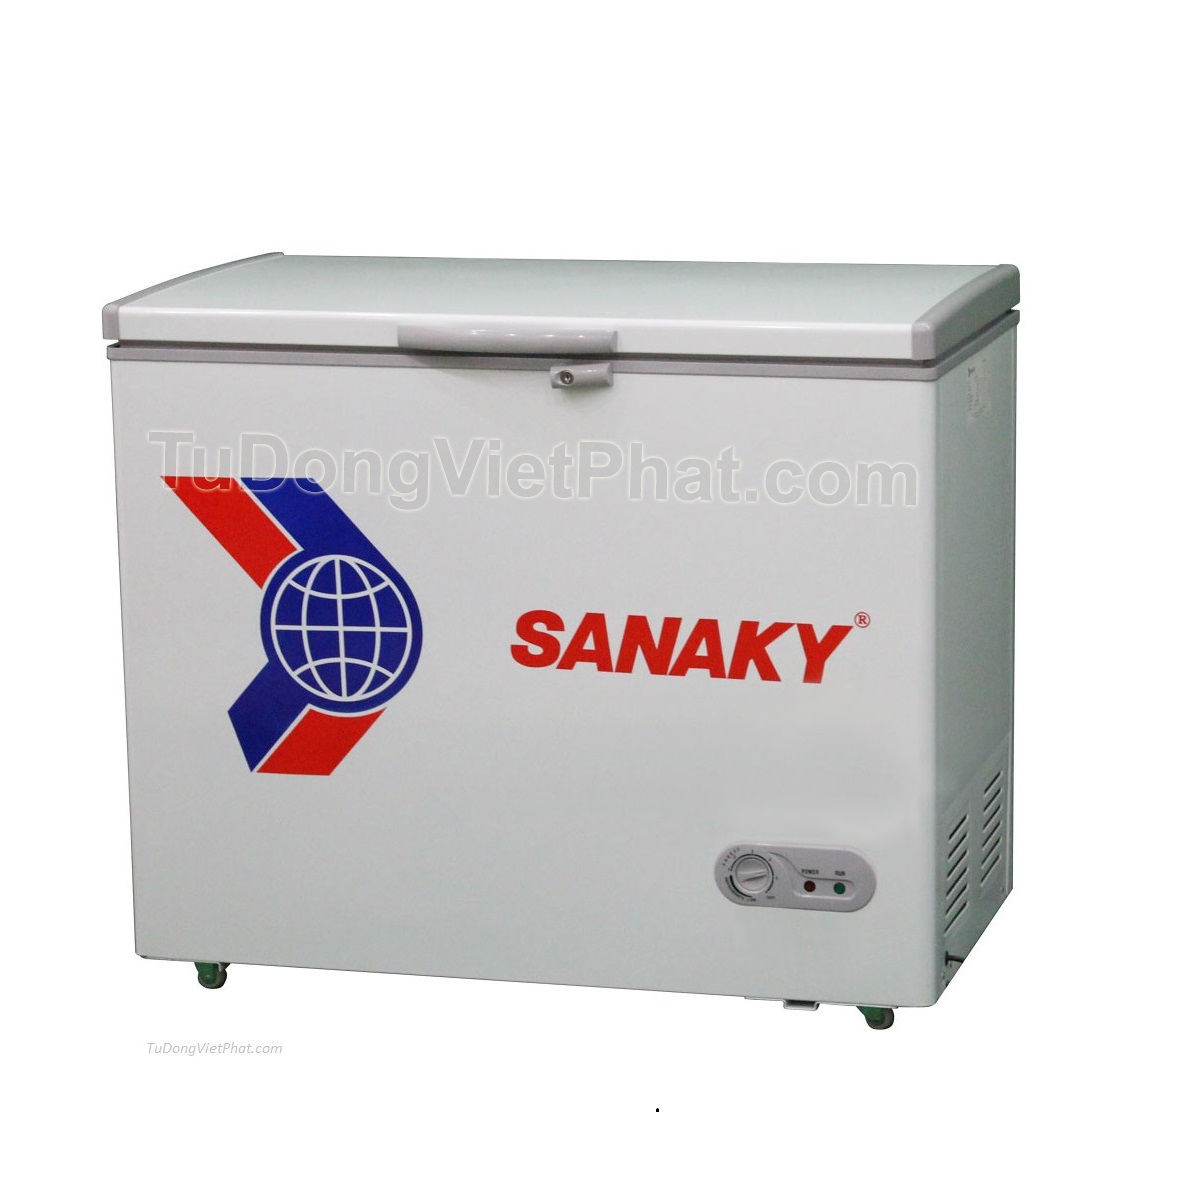 Thanh lý tủ đông mặt kính cong Sanaky VH 4899K3 400 lít inverter mới -  Thanh Lý Đồ Cũ Hà Nội